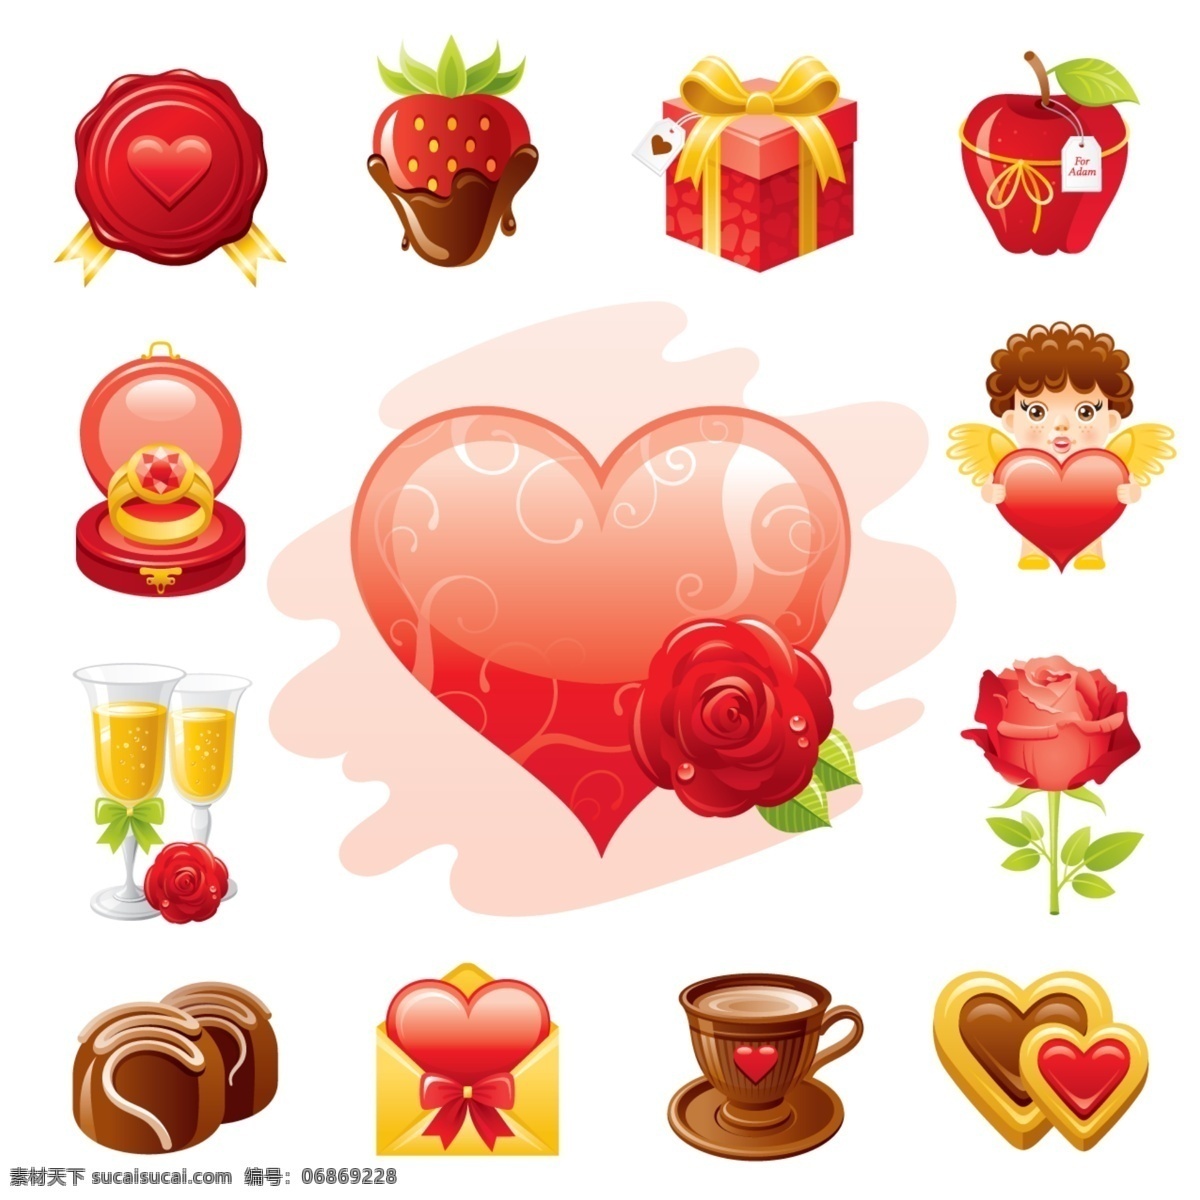 爱情 主题 图标 矢量 标签 礼品 苹果 巧克力 矢量图 其他矢量图